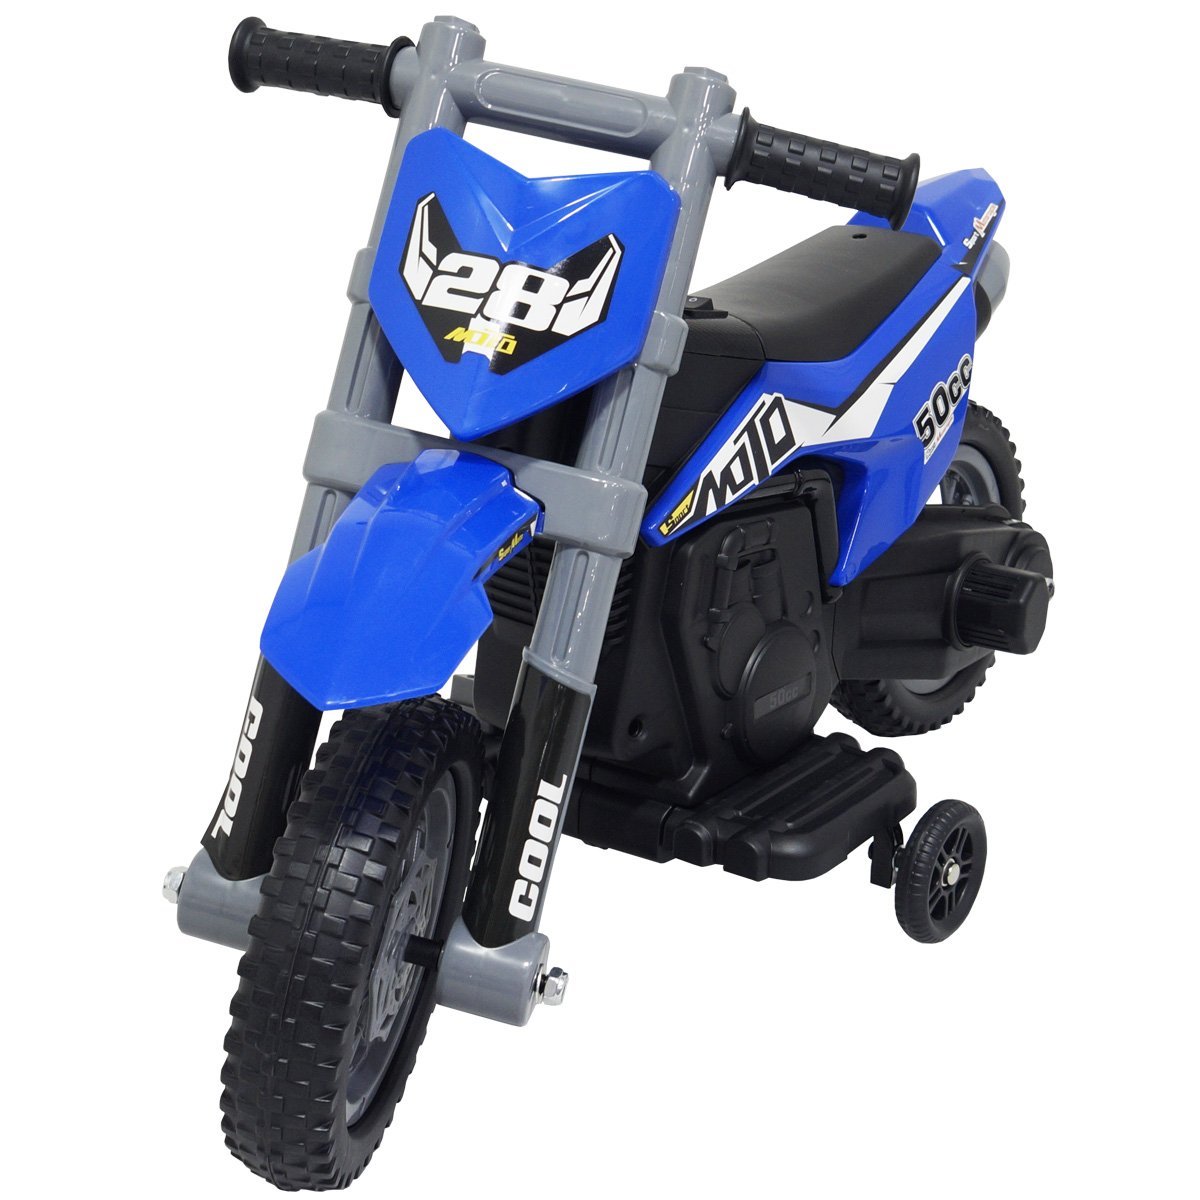 Mini Moto Cross Infantil Elétrica 6V Recarregável Triciclo Criança Bivolt Brinqway Bw233 Motorizado 